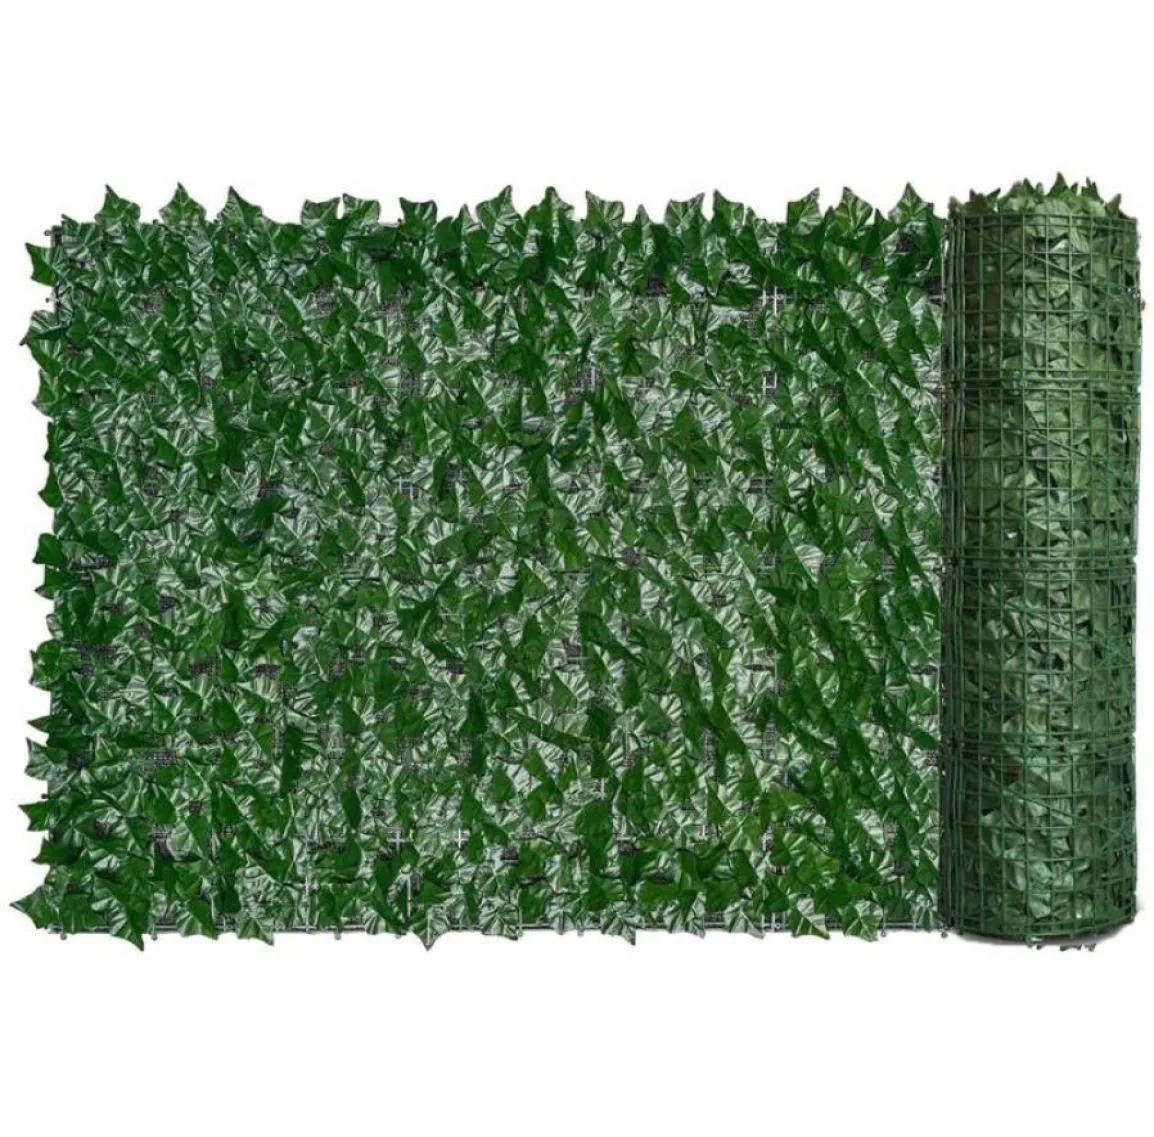 Schermen trellis poorten kunstmatige hedge groen blad klimop schermen scherm plant muur nep gras decoratieve achtergrond privacy bescherming2725848